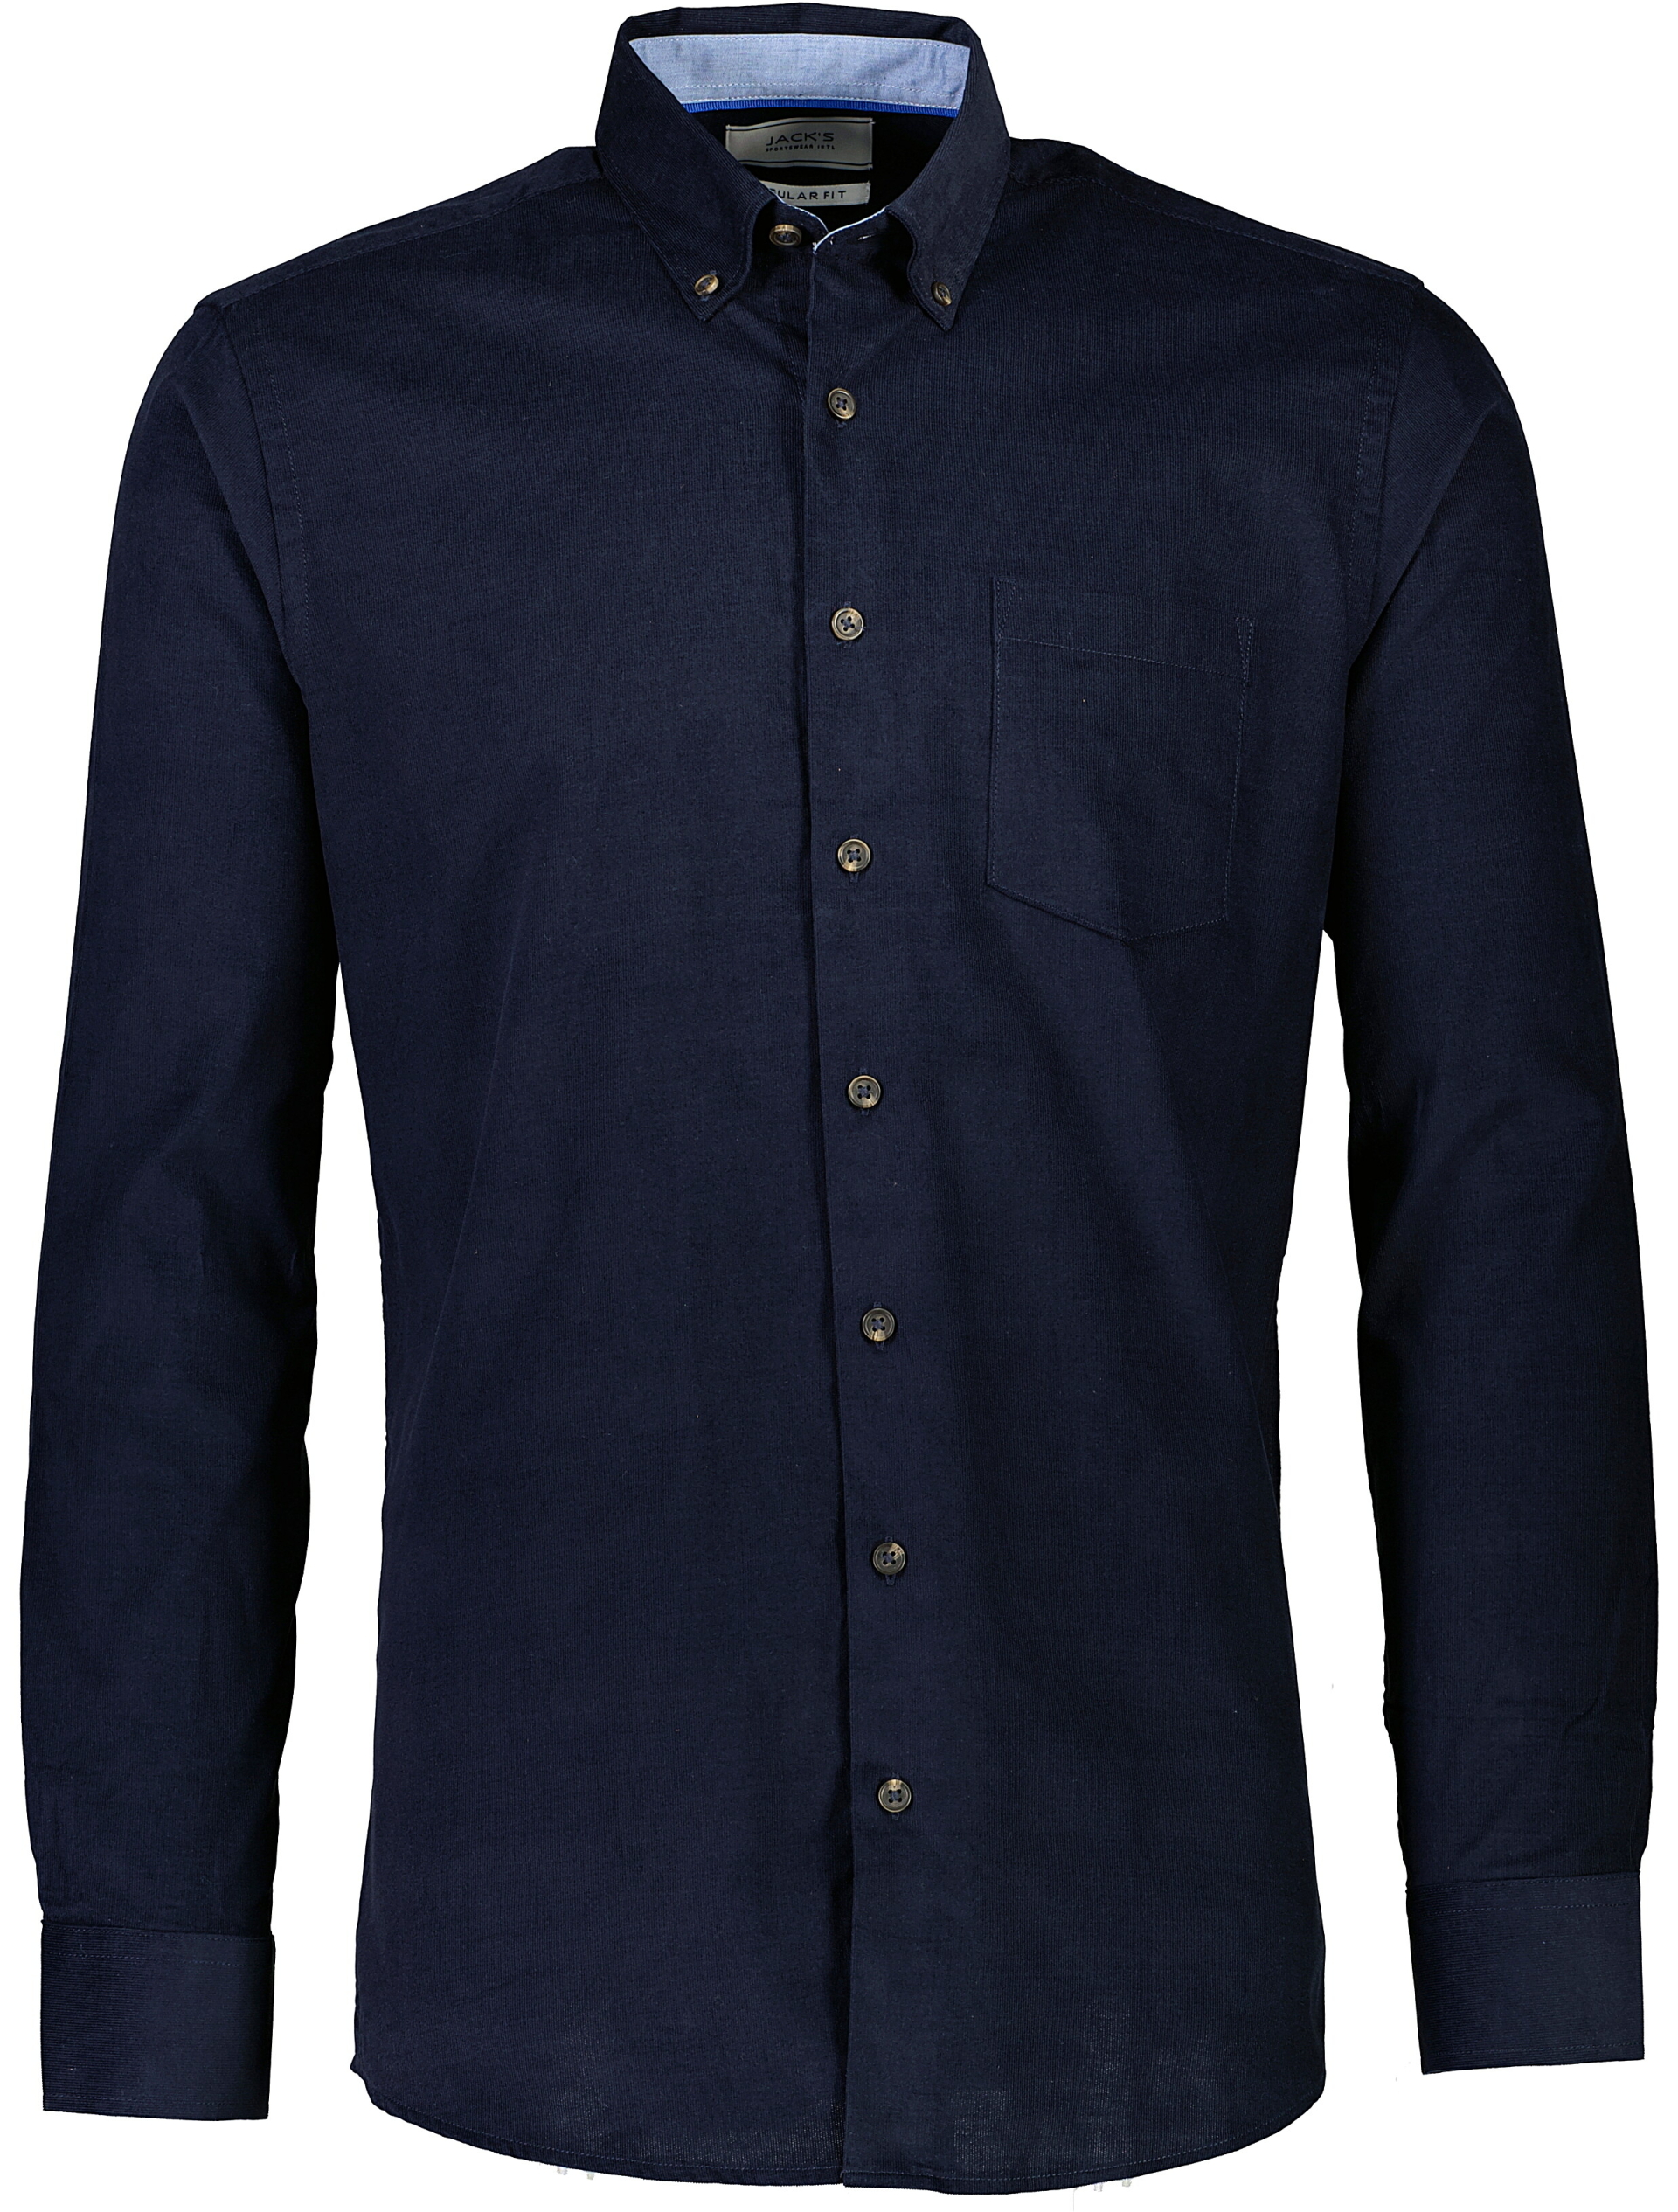 Jack's Fløjlsskjorte blå / navy